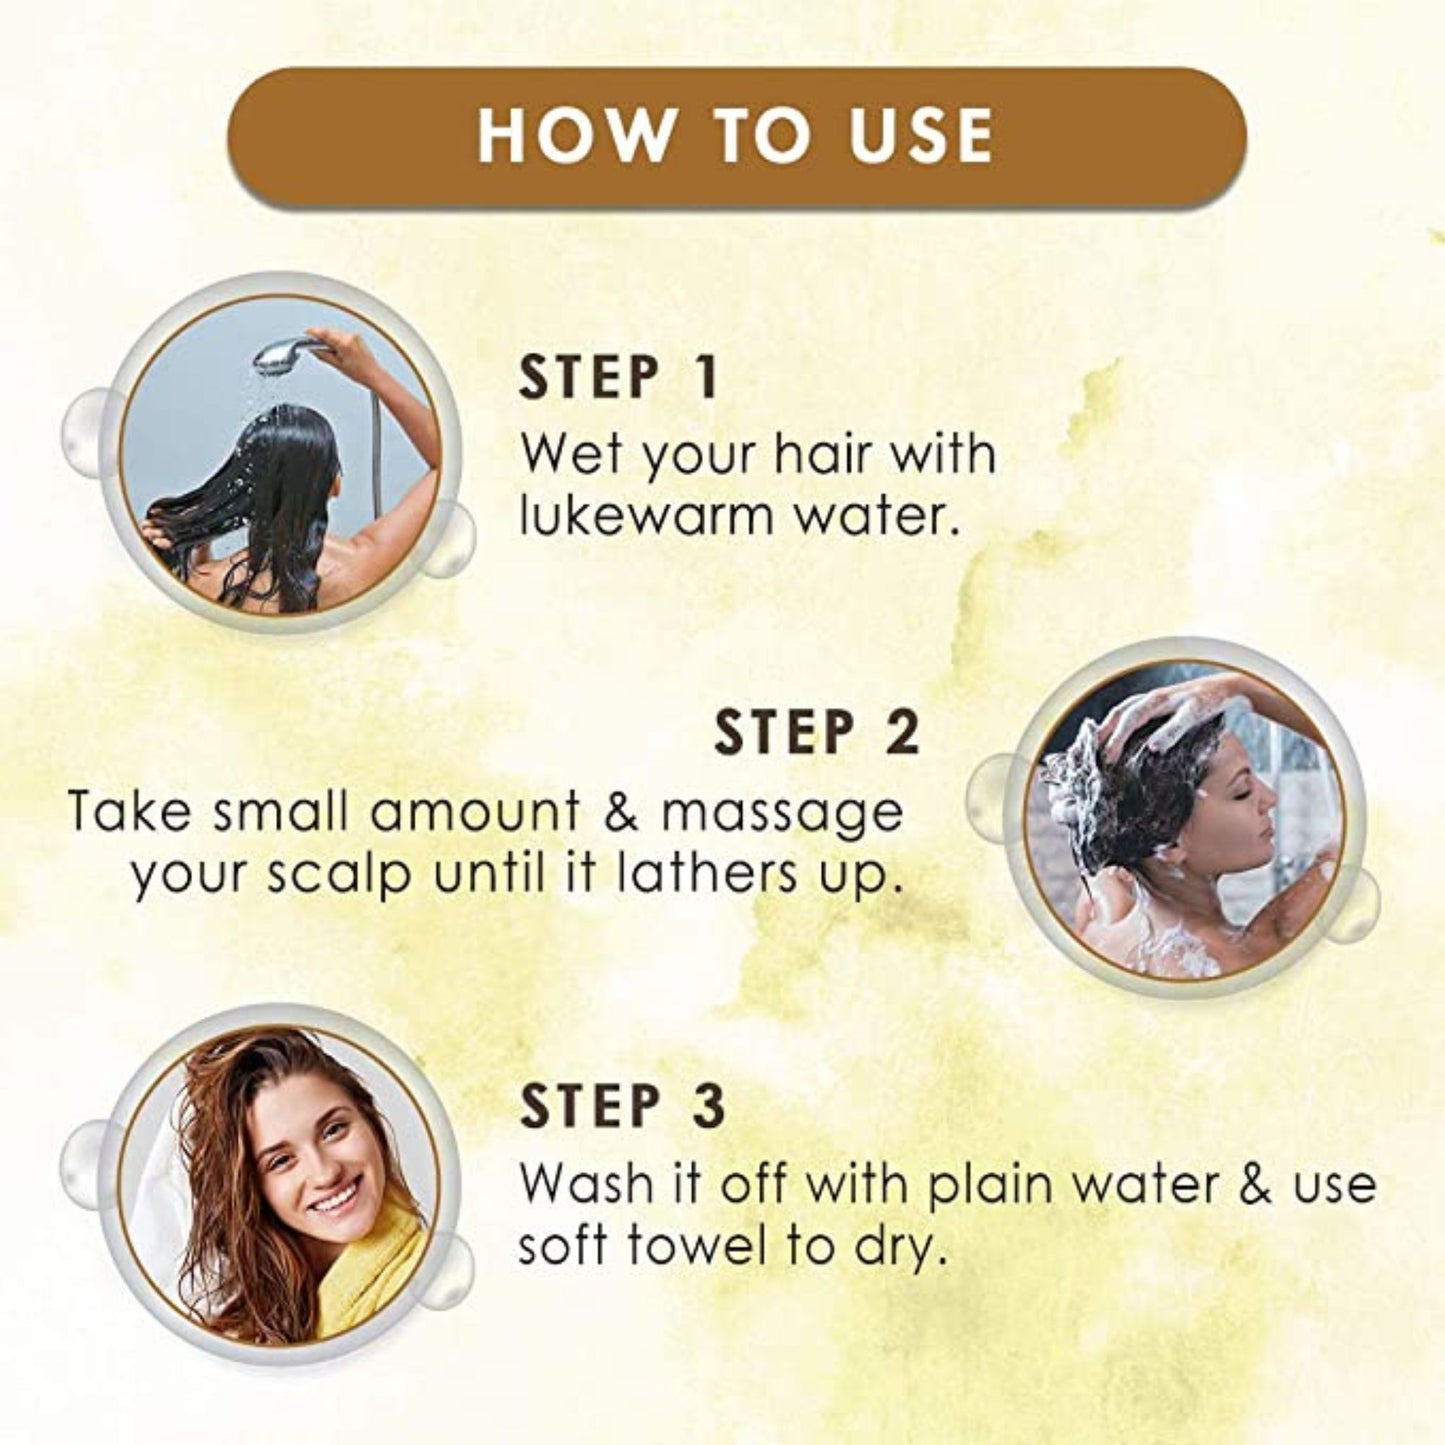 WOW Skin Science Moroccan Argan Oil Shampoo For Dry Hair/Dandruff/Hair Loss/Hair Growth/Frizzy Hair